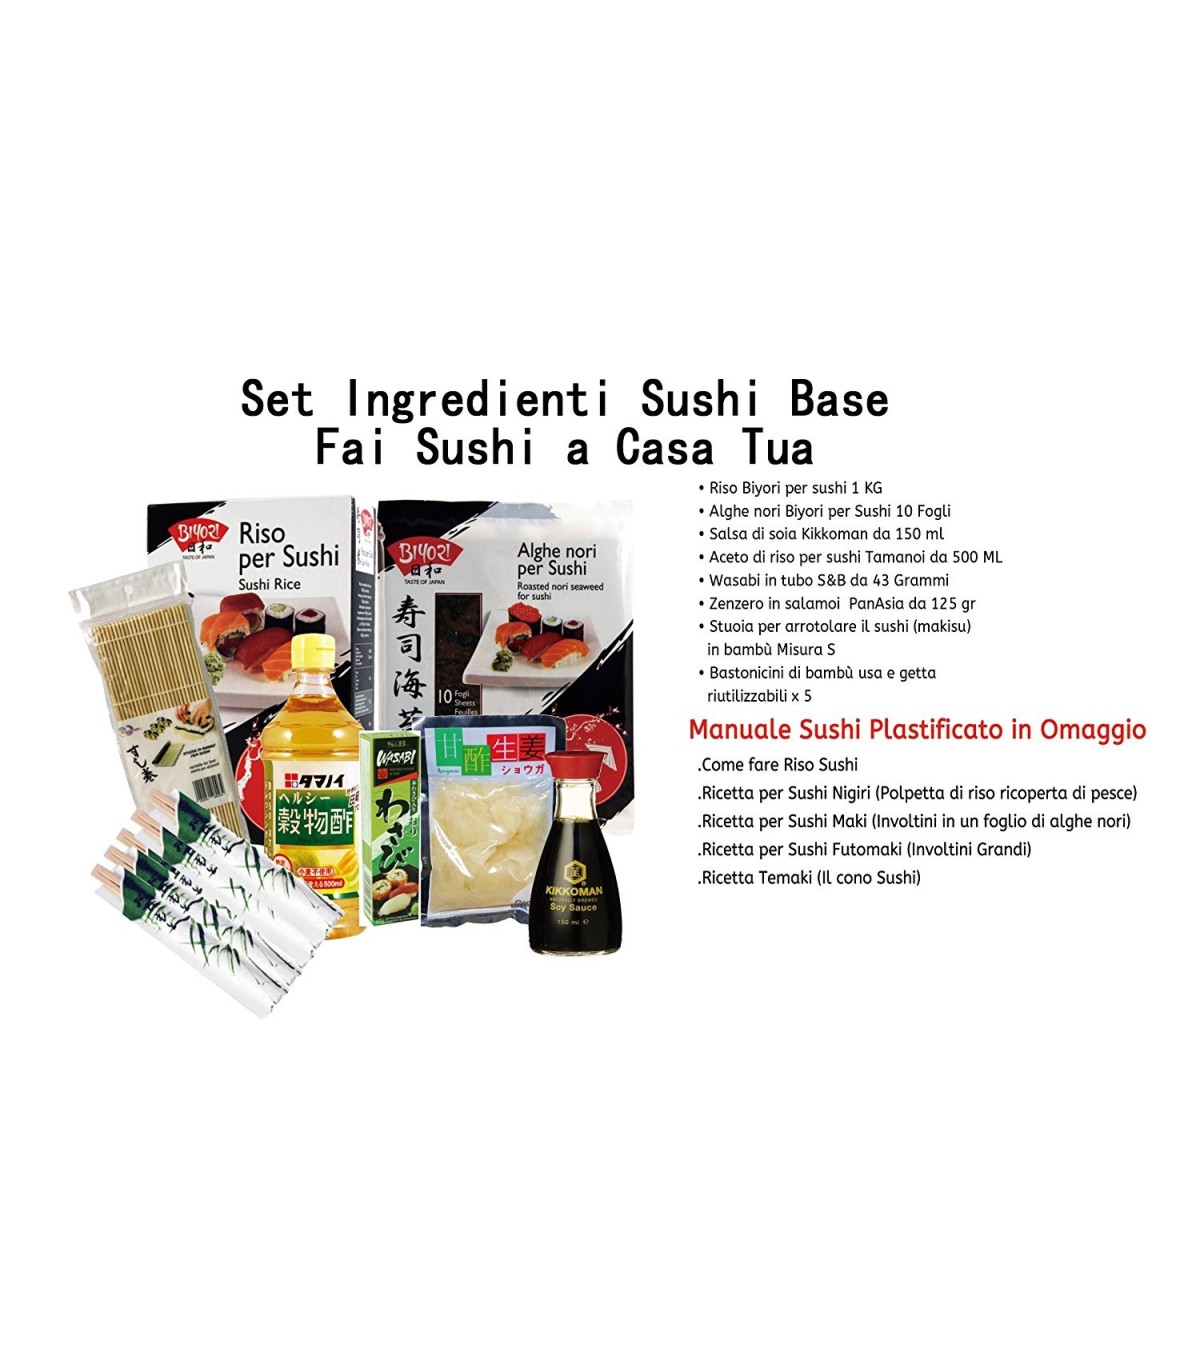 Tramezzini Ideale Per Onigiri Maki Sushi Sushi Kit Sashimi Kit Completo Per Sushi Con Ingredienti Kit Facile E Divertente Per Principianti 